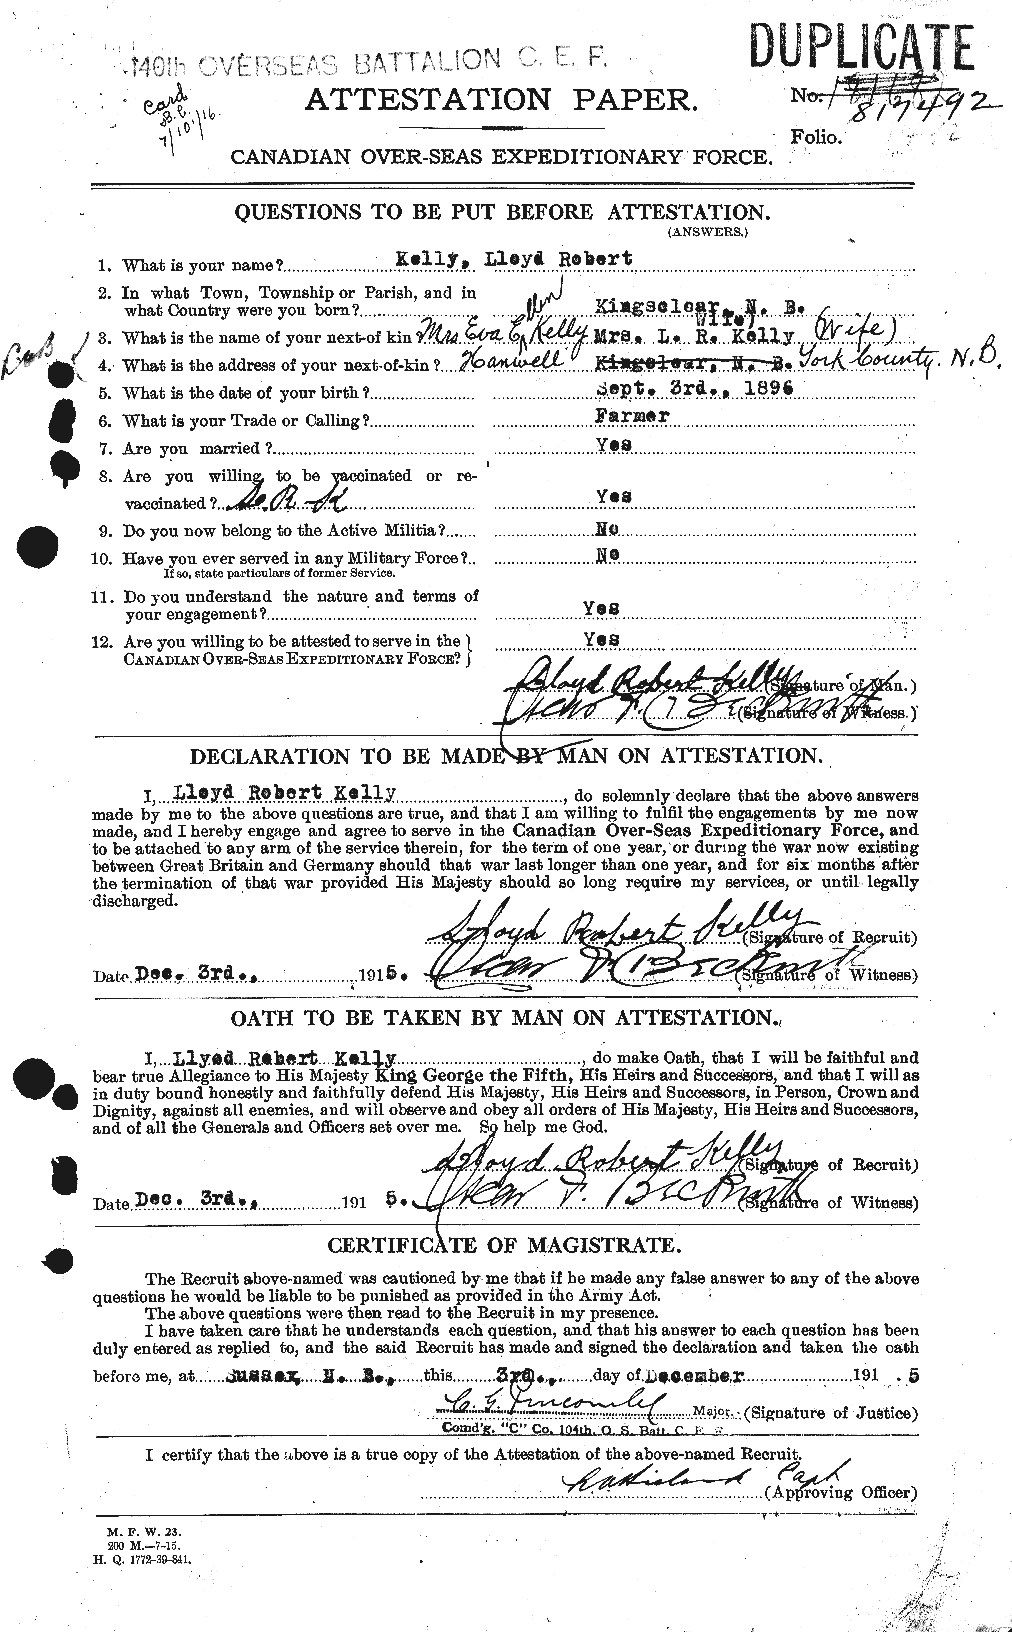 Dossiers du Personnel de la Première Guerre mondiale - CEC 433660a